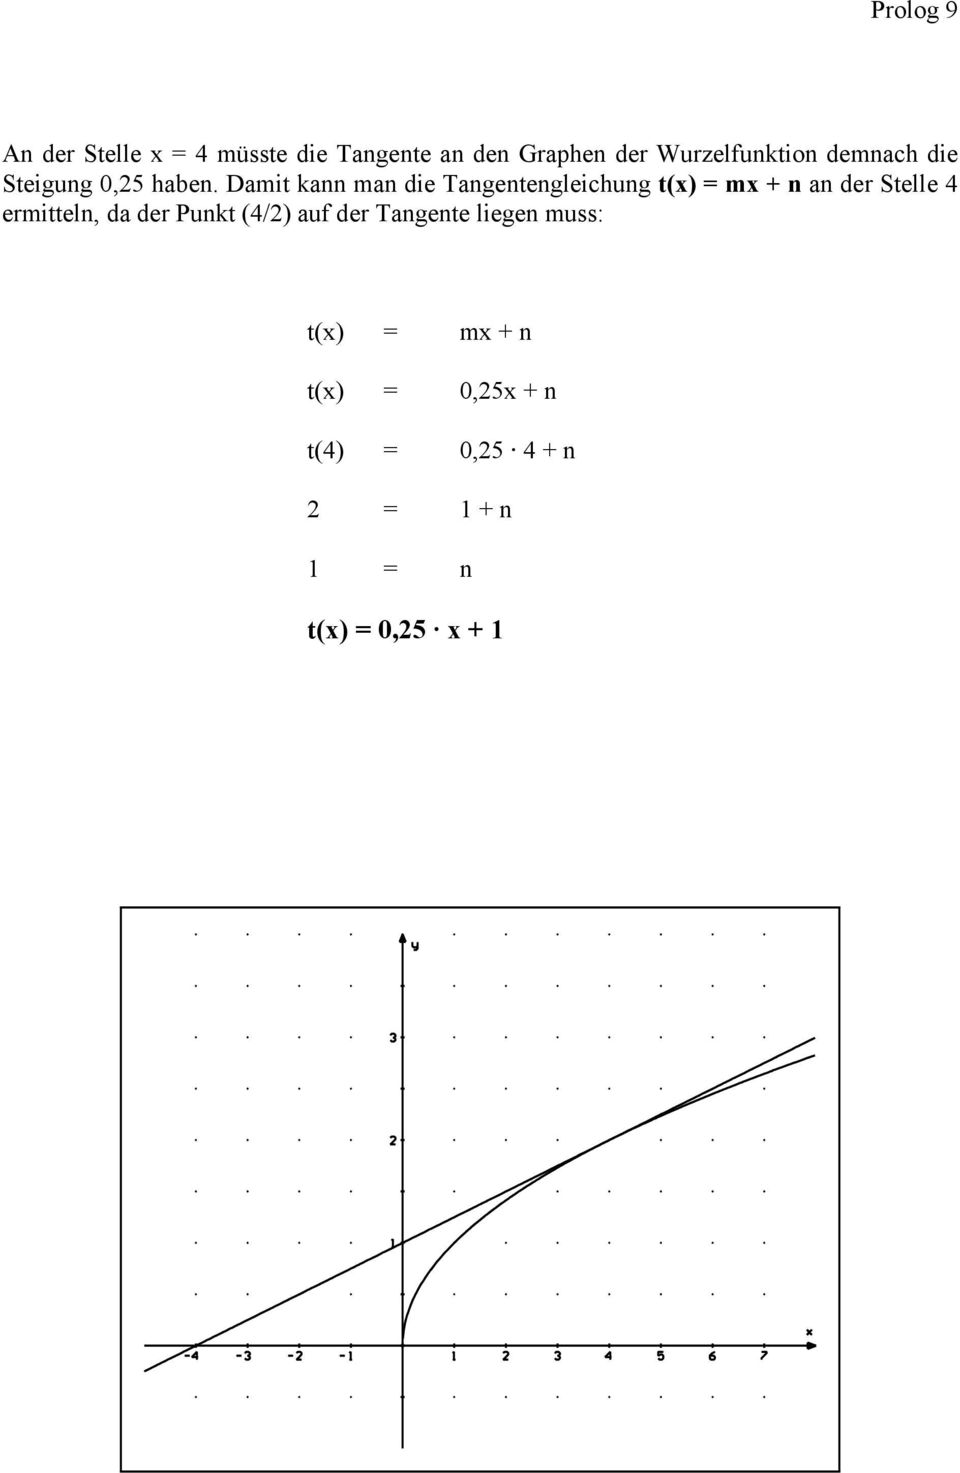 Dait kann an die Tangentengleichung t(x) = x + n an der Stelle 4 eritteln,